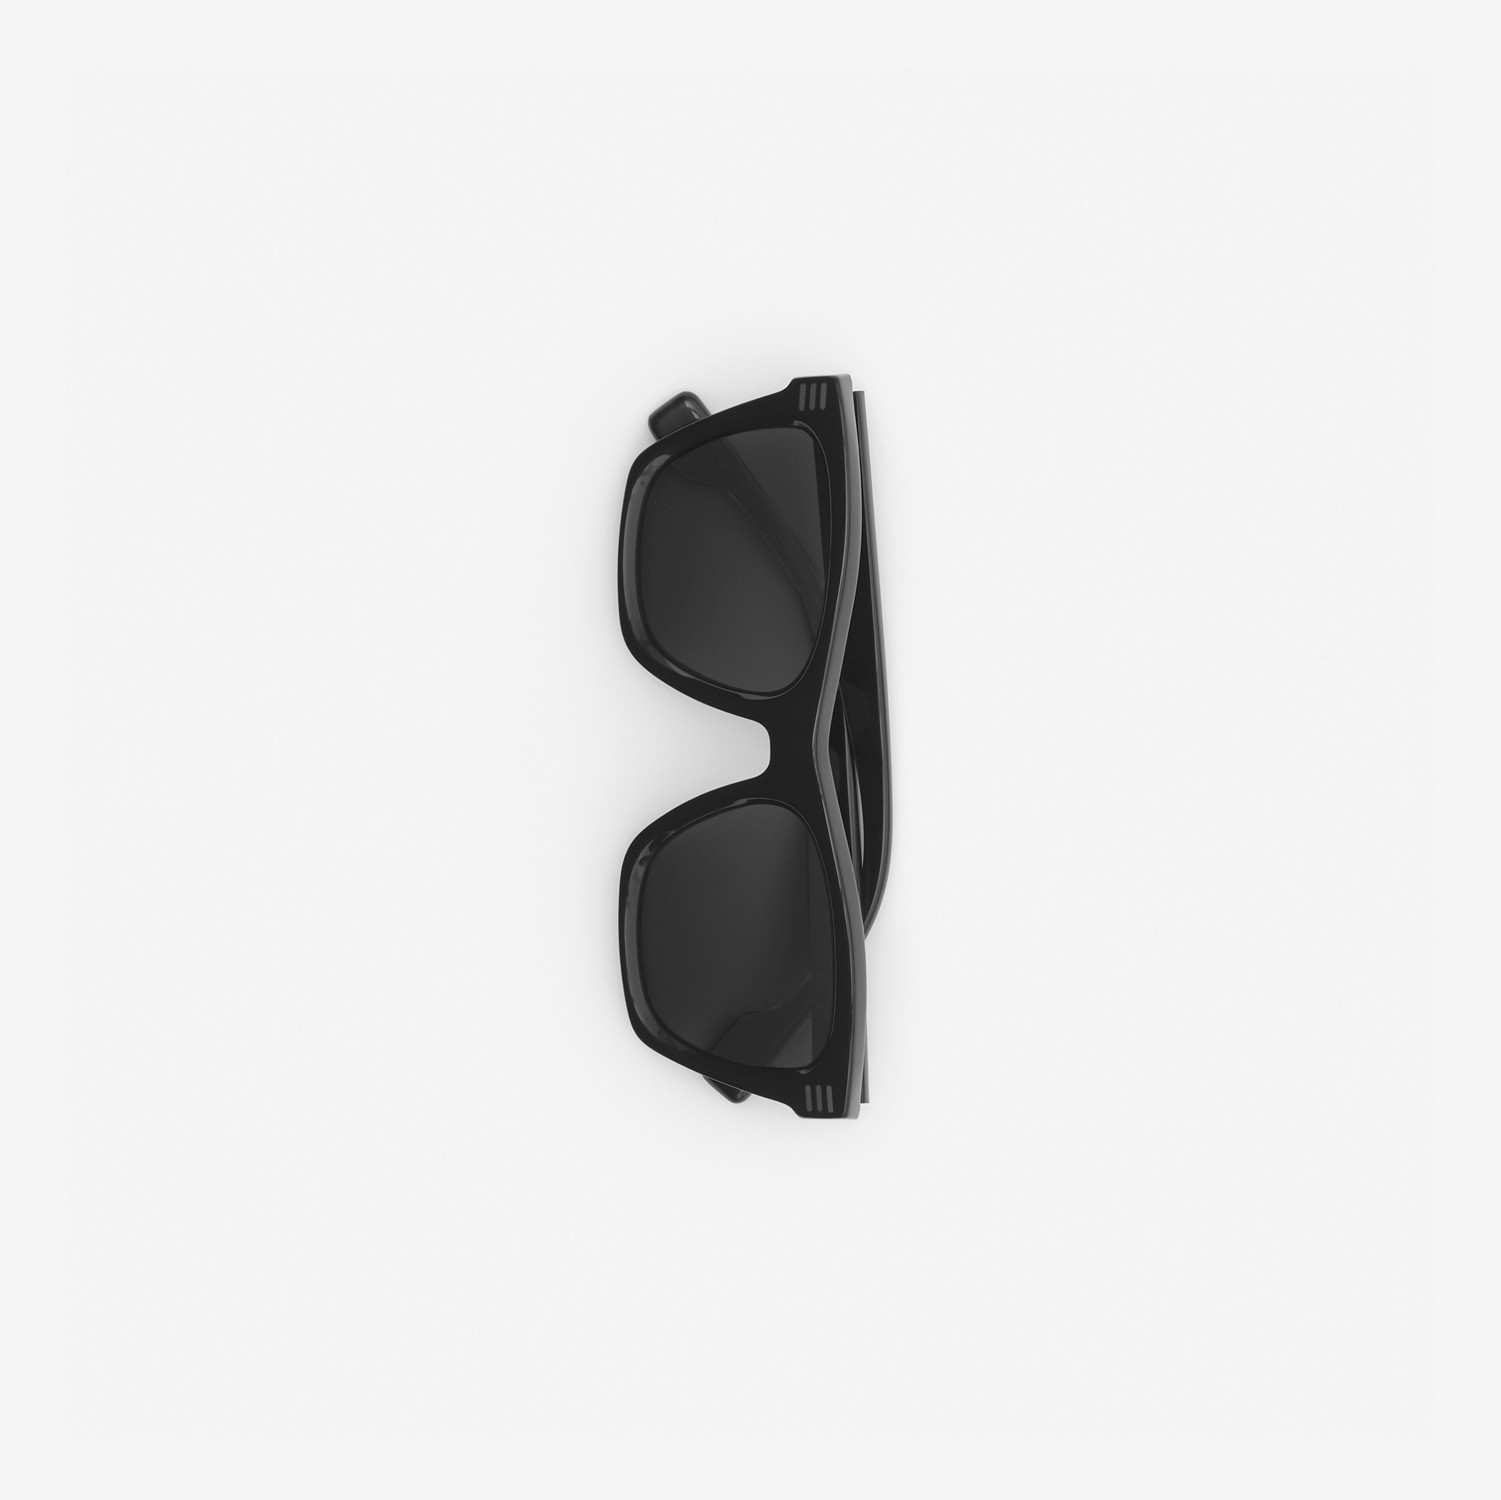 徽标装饰方框太阳眼镜 (黑色) - 男士 | Burberry® 博柏利官网